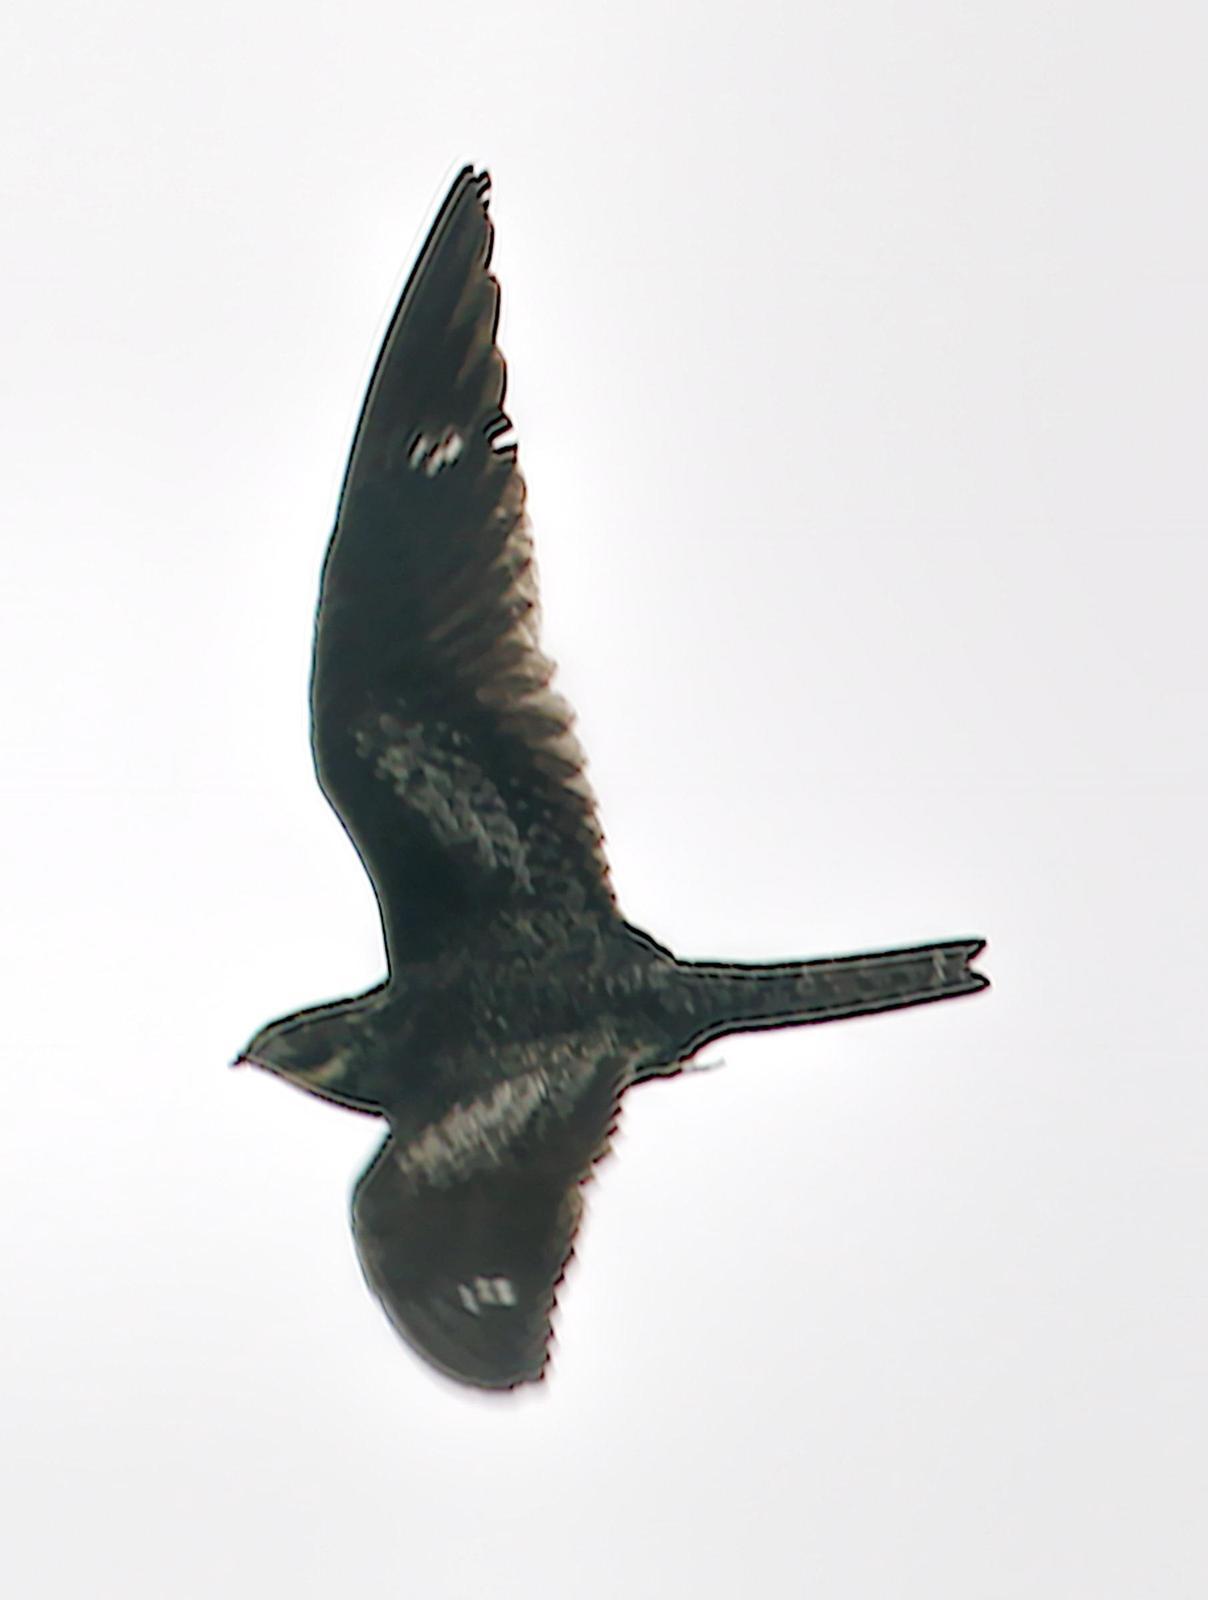 Common Nighthawk Photo by Dan Tallman